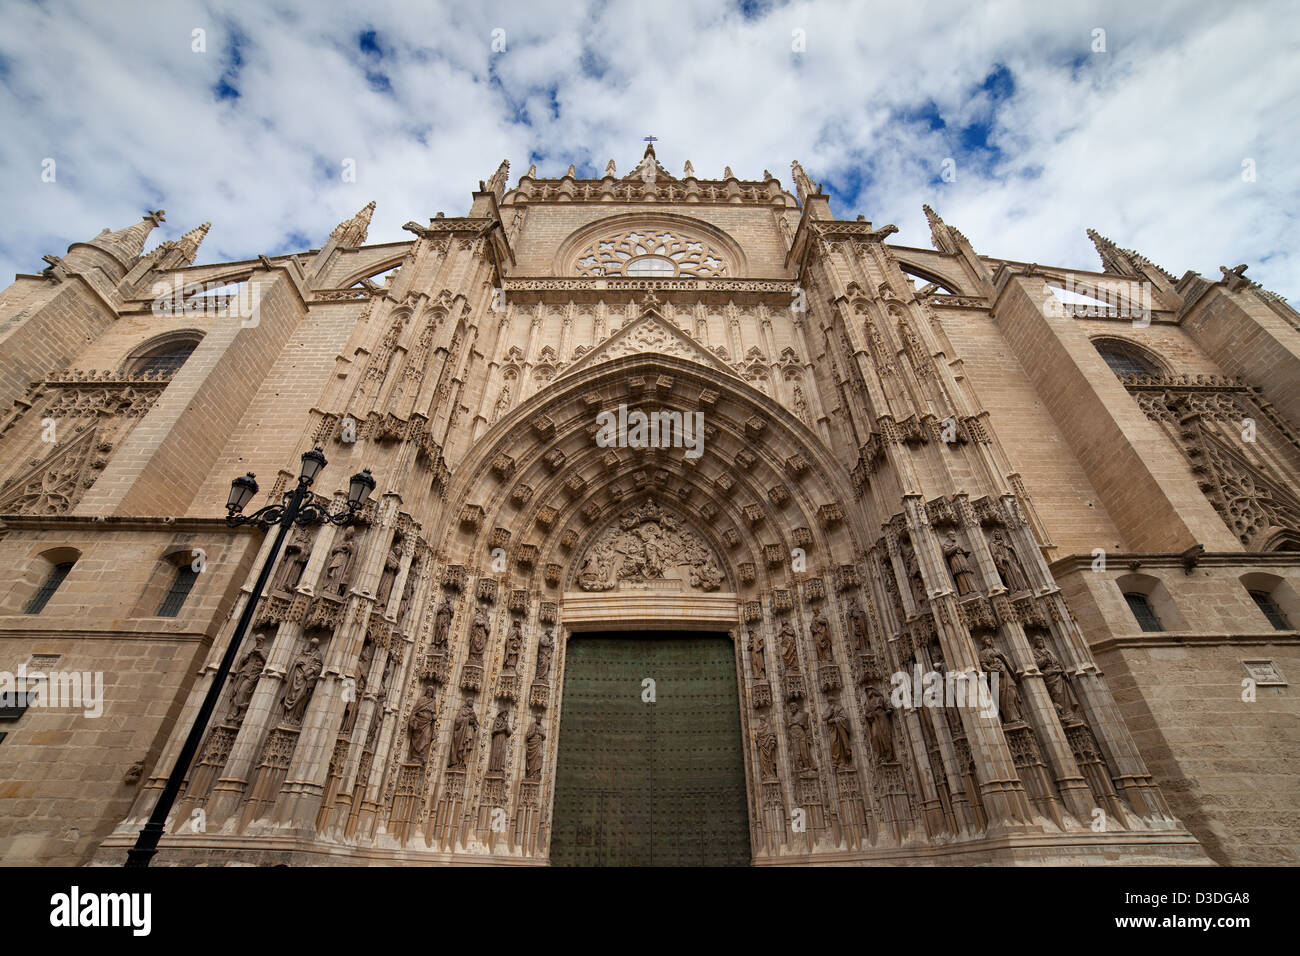 Porte de l'assomption (espagnol : Puerta de la asuncion) de la cathédrale de Séville en Espagne, principal portail de la façade ouest. Banque D'Images